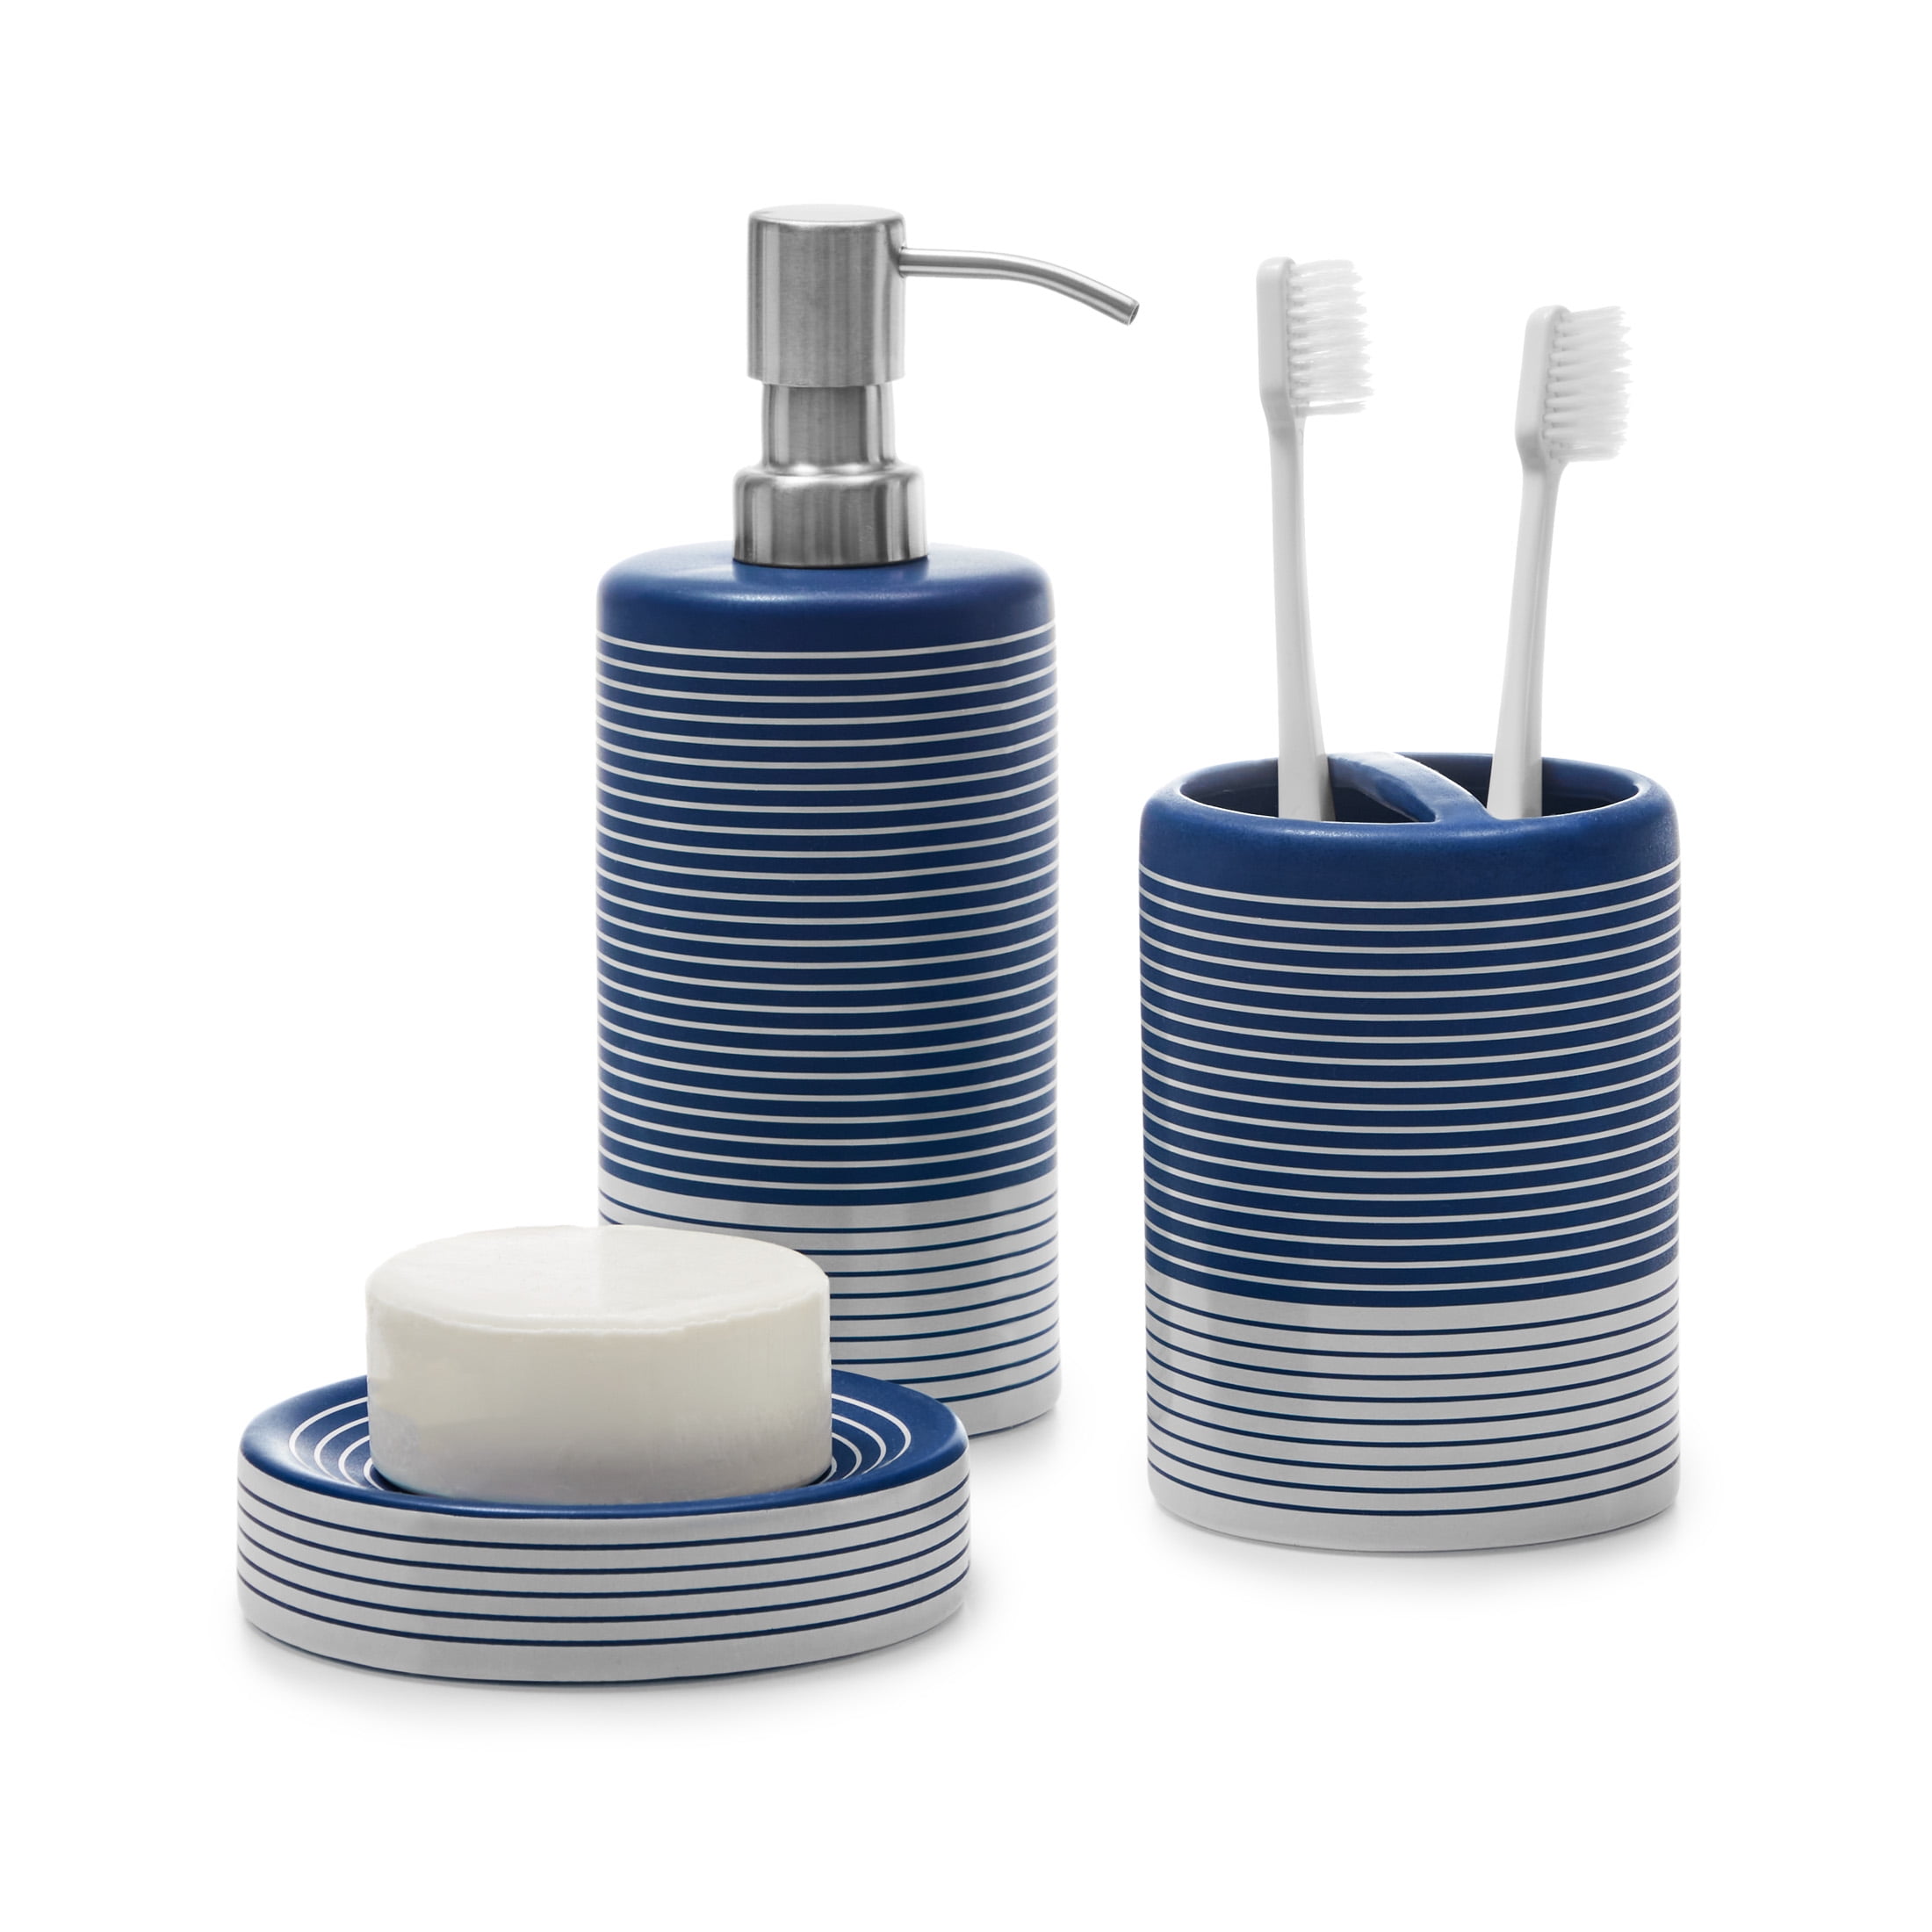 Dish & Tumbler Blue Bathroom Accessory Set 3 pcs Soap Dispenser 